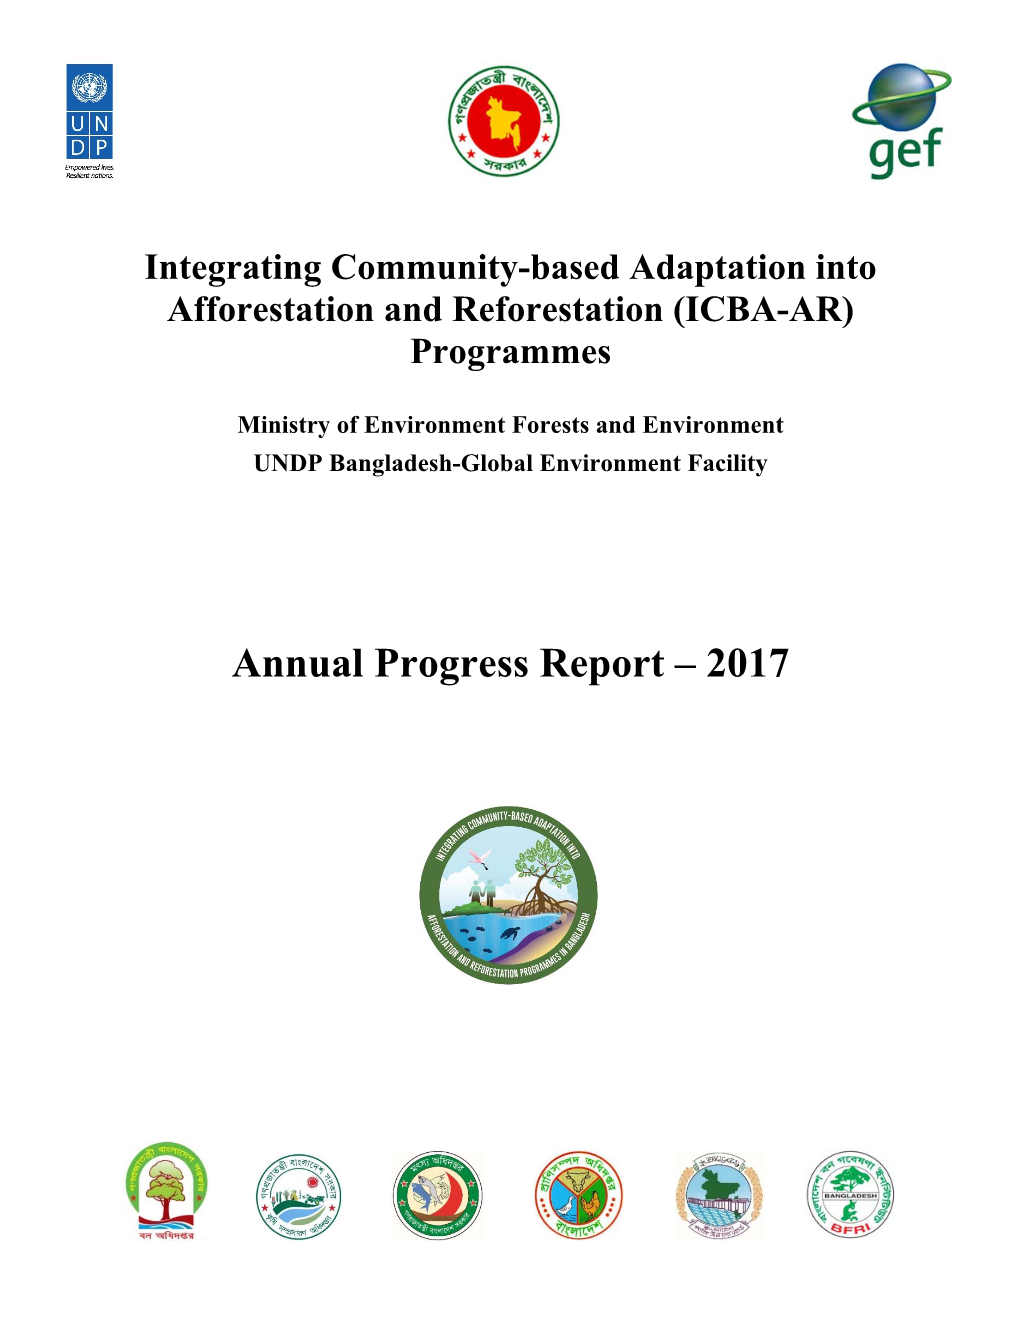 Annual Progress Report – 2017